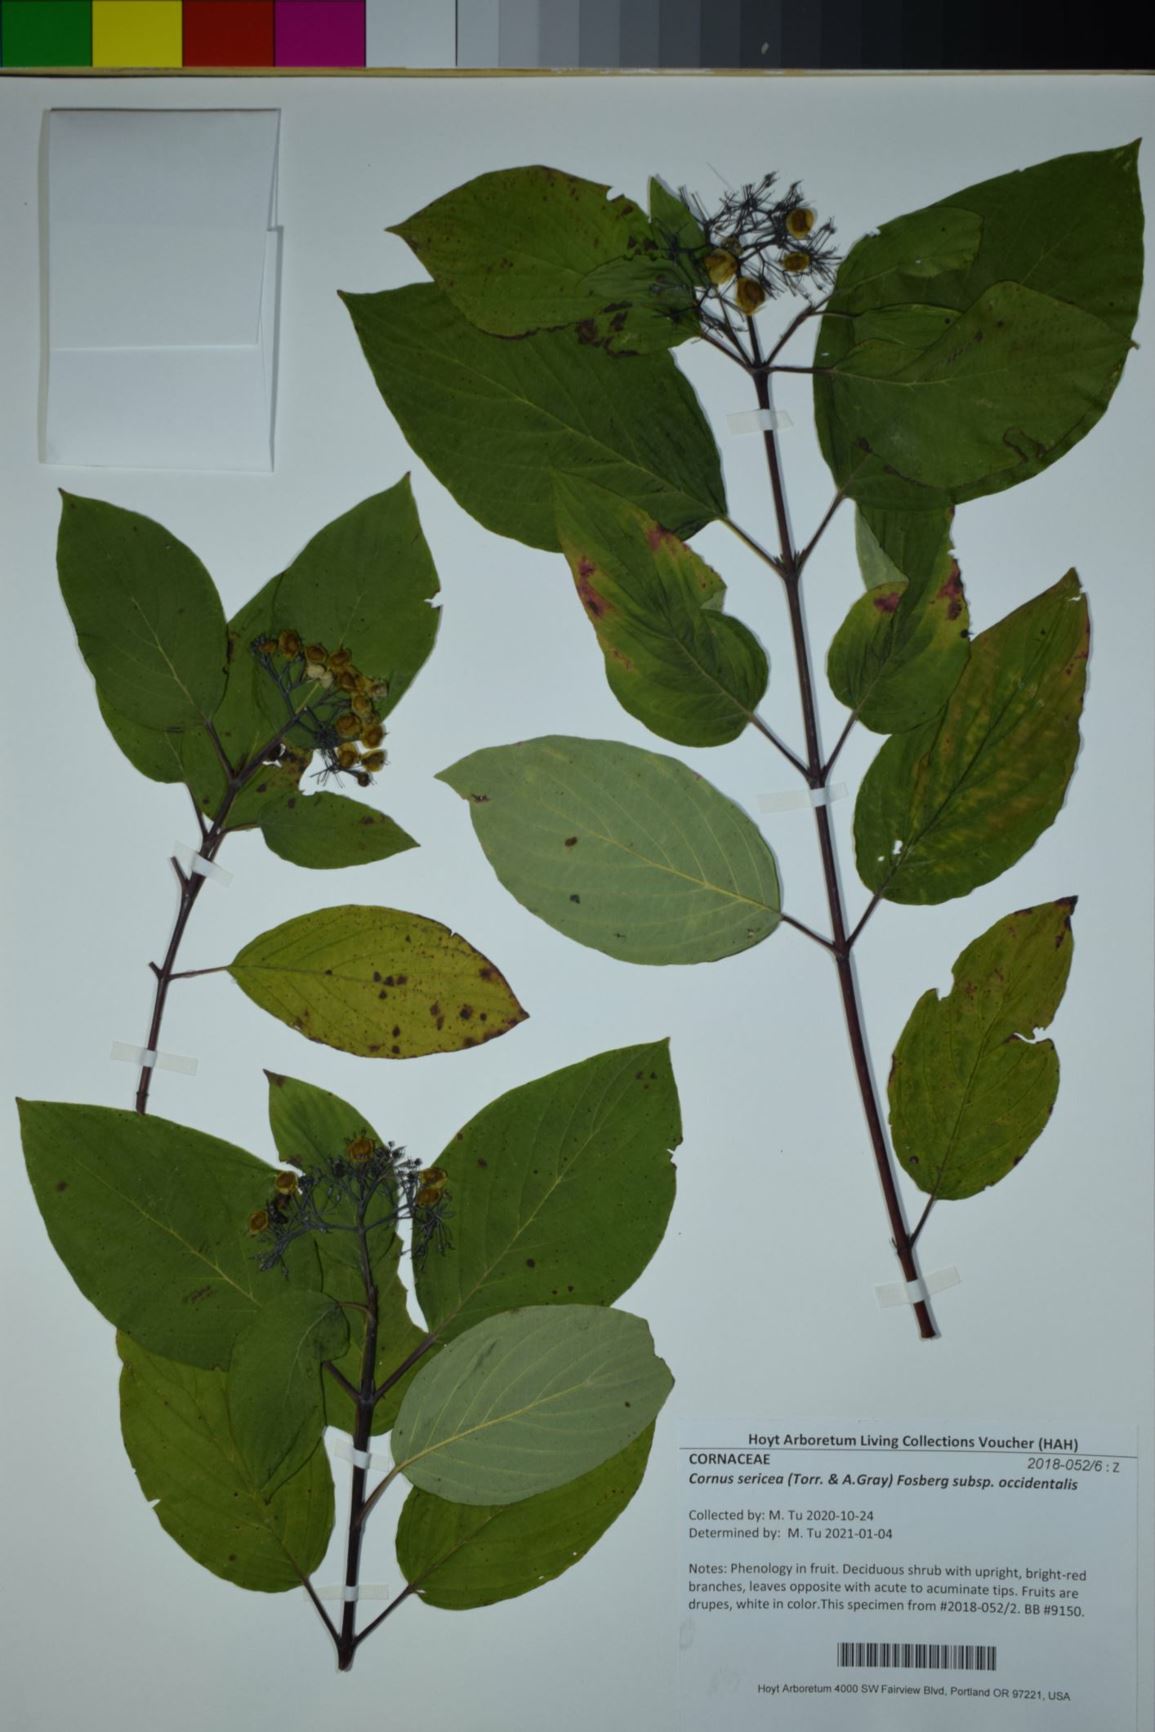 Cornus sericea subsp. occidentalis - Creek Dogwood, western dogwood